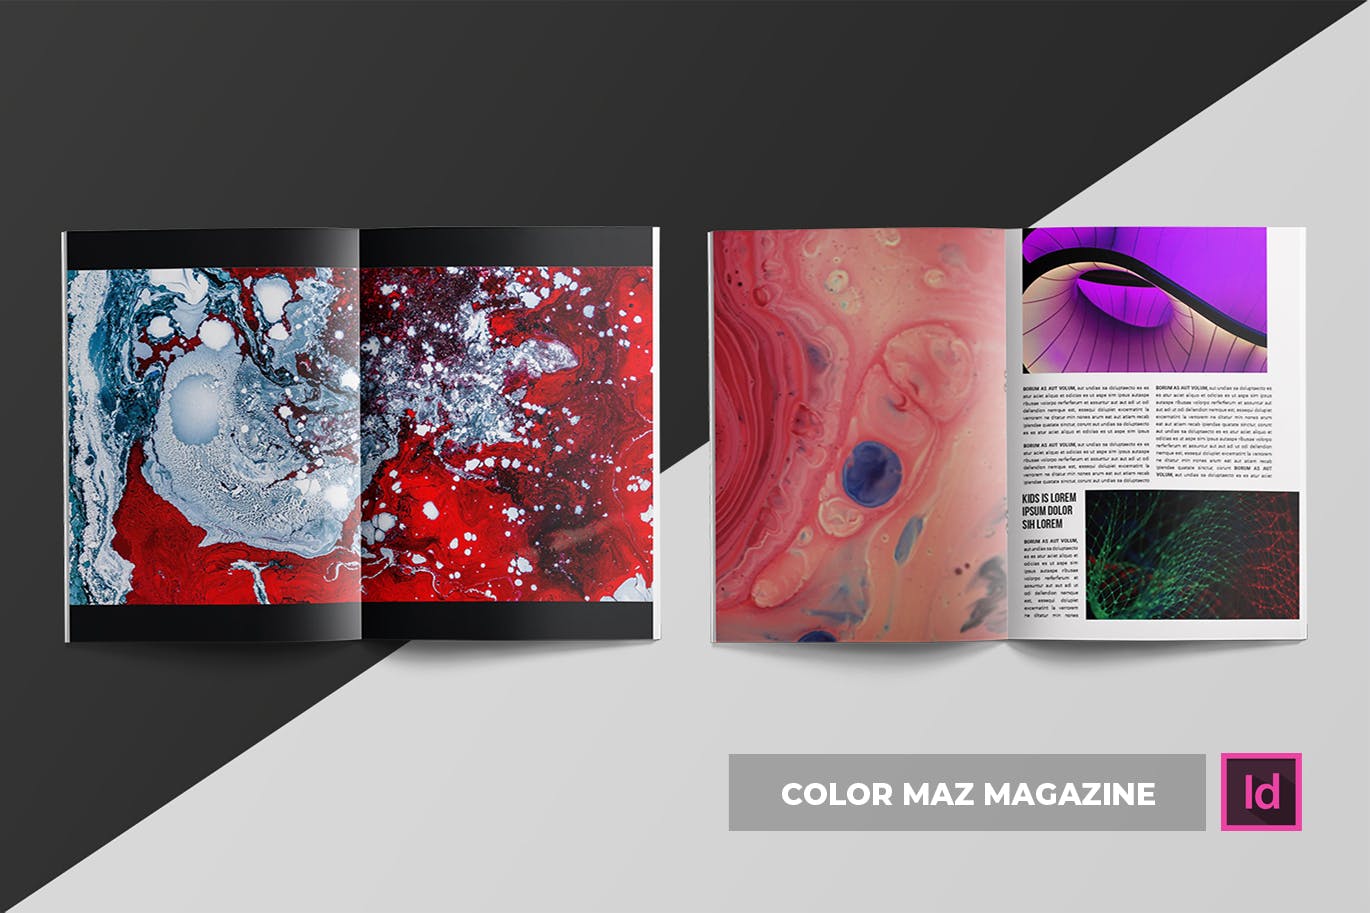 色彩设计创意杂志排版设计模板 Color Maz | Magazine Template插图(8)